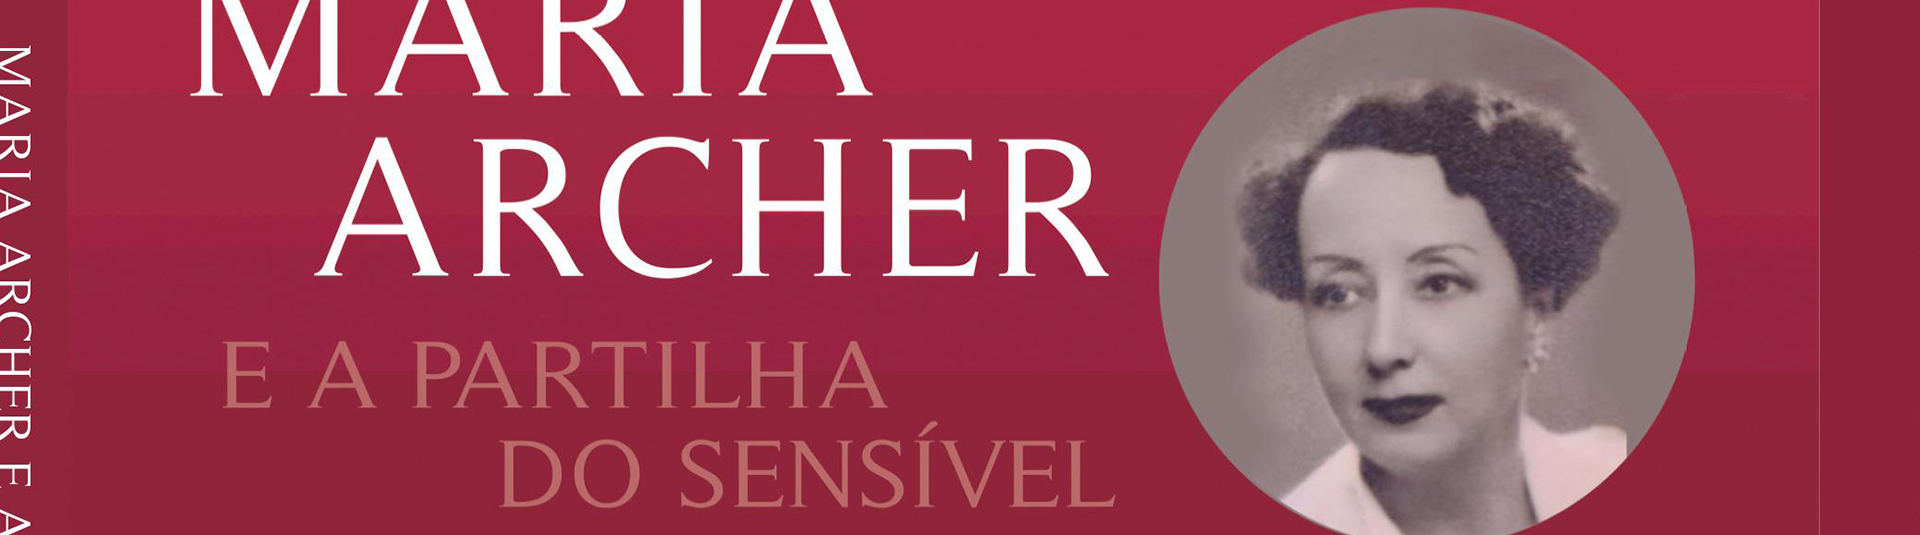 Apresentação do livro “Maria Archer e a partilha do sensível” de Elisabeth Battista e Maria Manuela Aguiar 